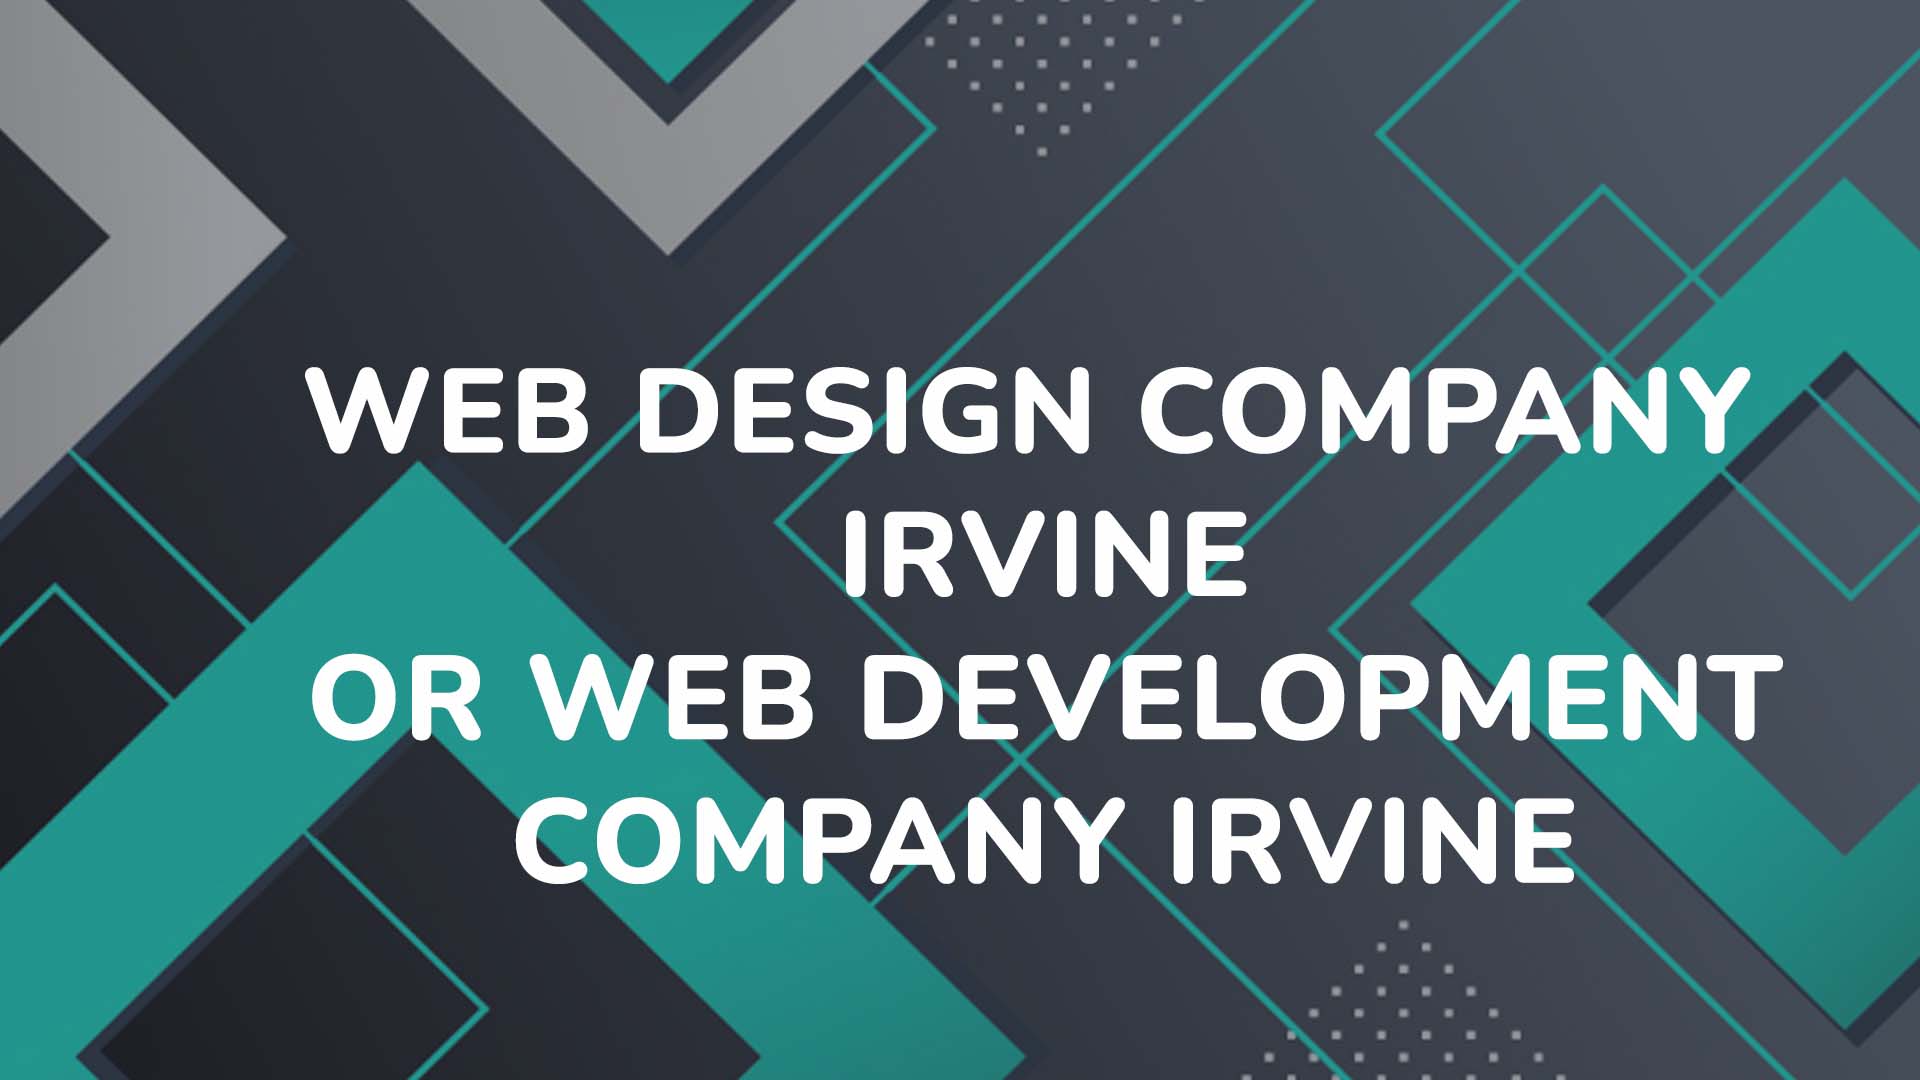 web design company Irvine or web development company Irvine